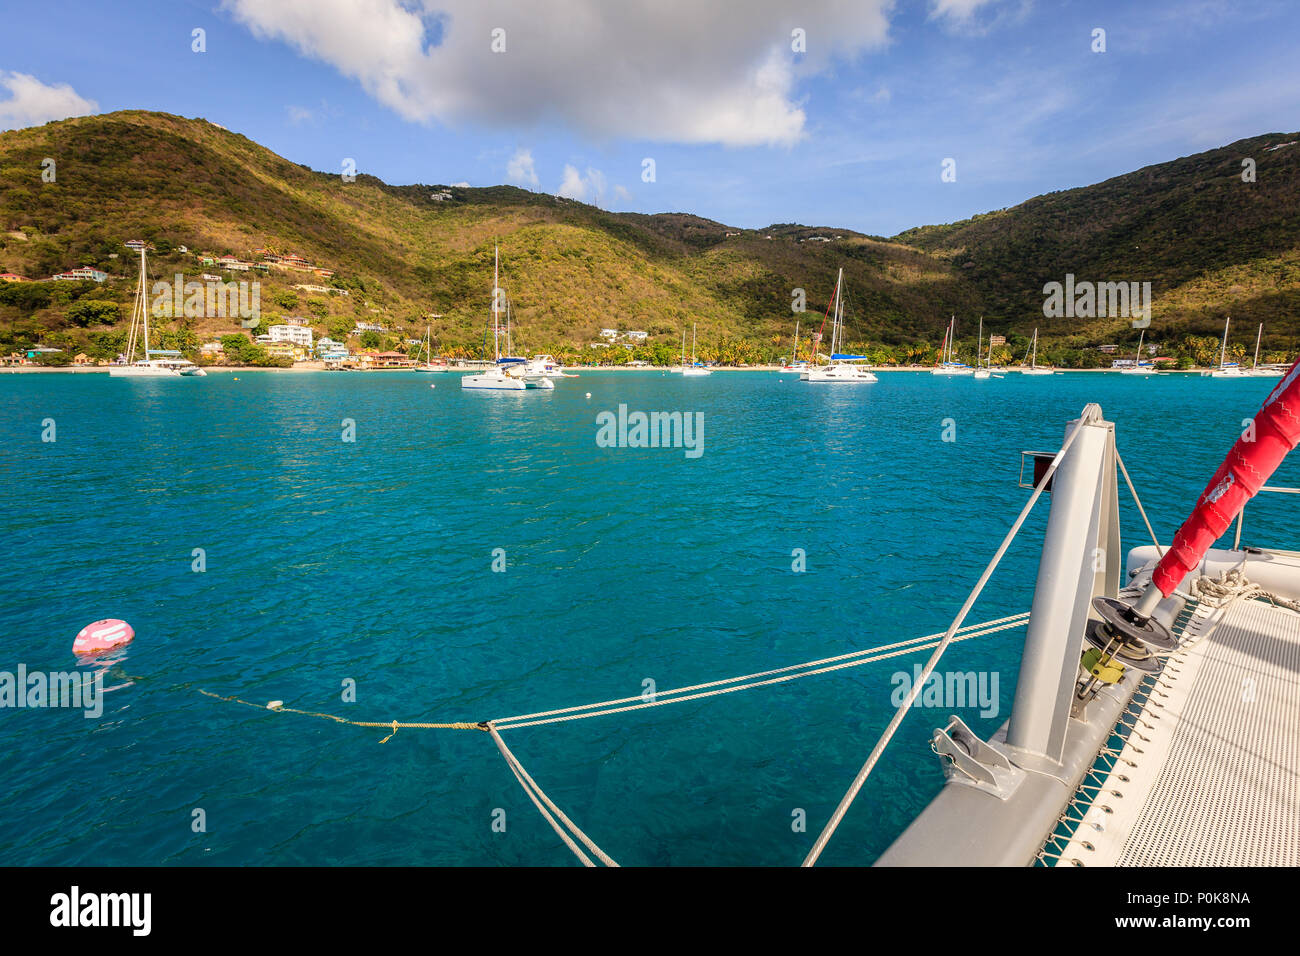 Yacht à voile sur une boule d'amarrage dans un port dans les îles Vierges britanniques Banque D'Images